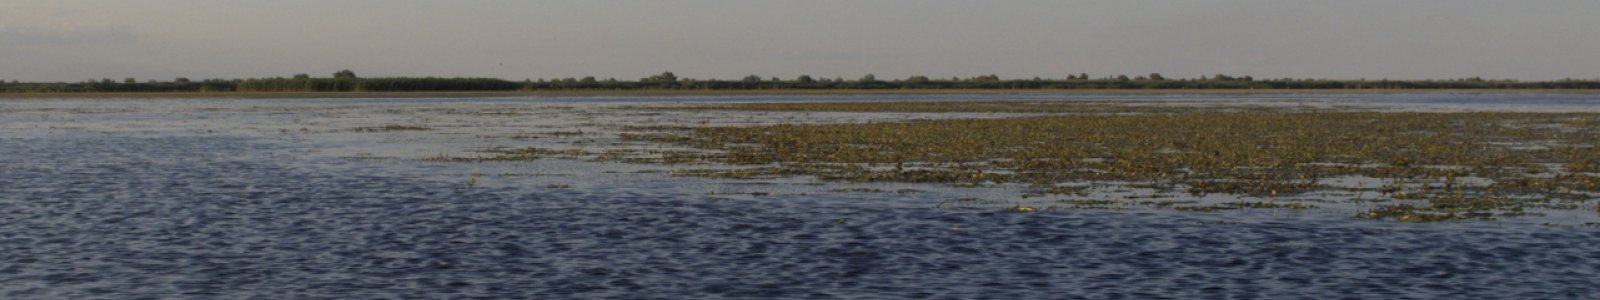 Romania's Danube Delta